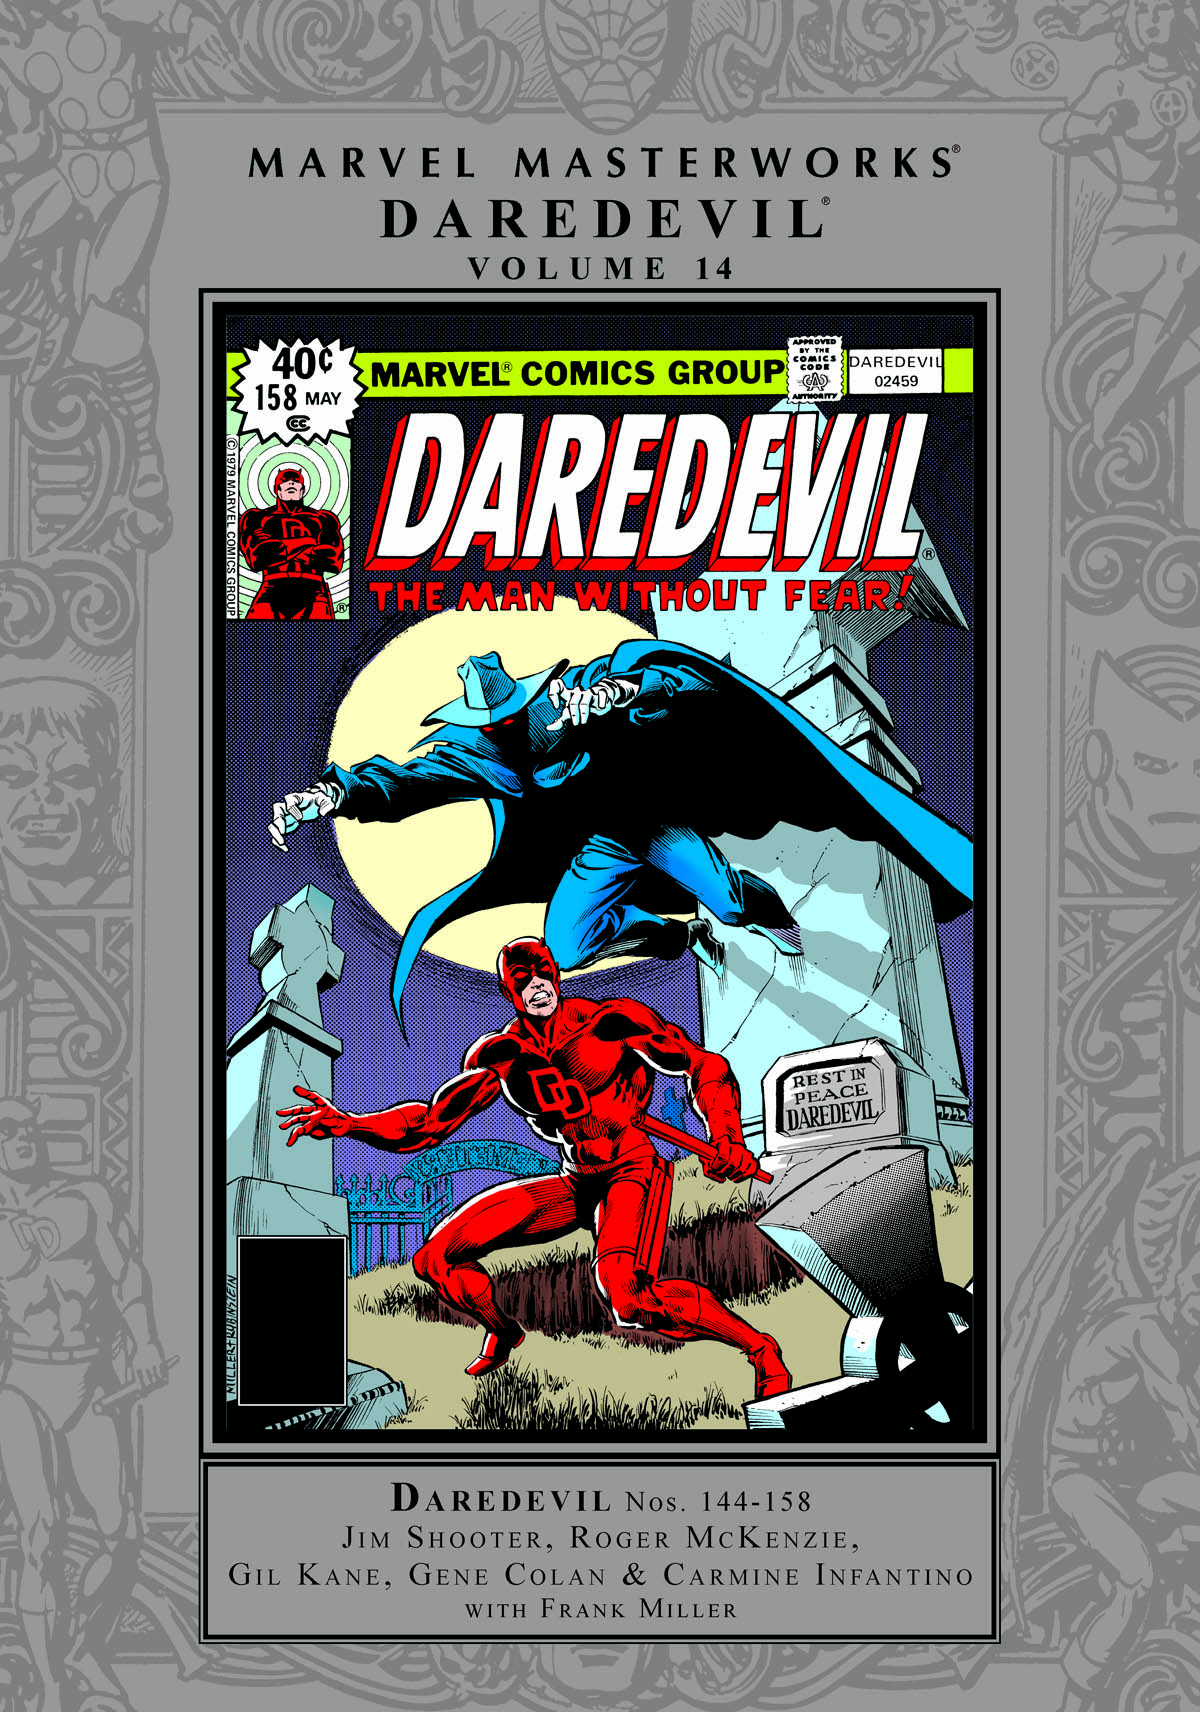 Marvel Masterworks: Daredevil Vol. 14 (Hardcover)